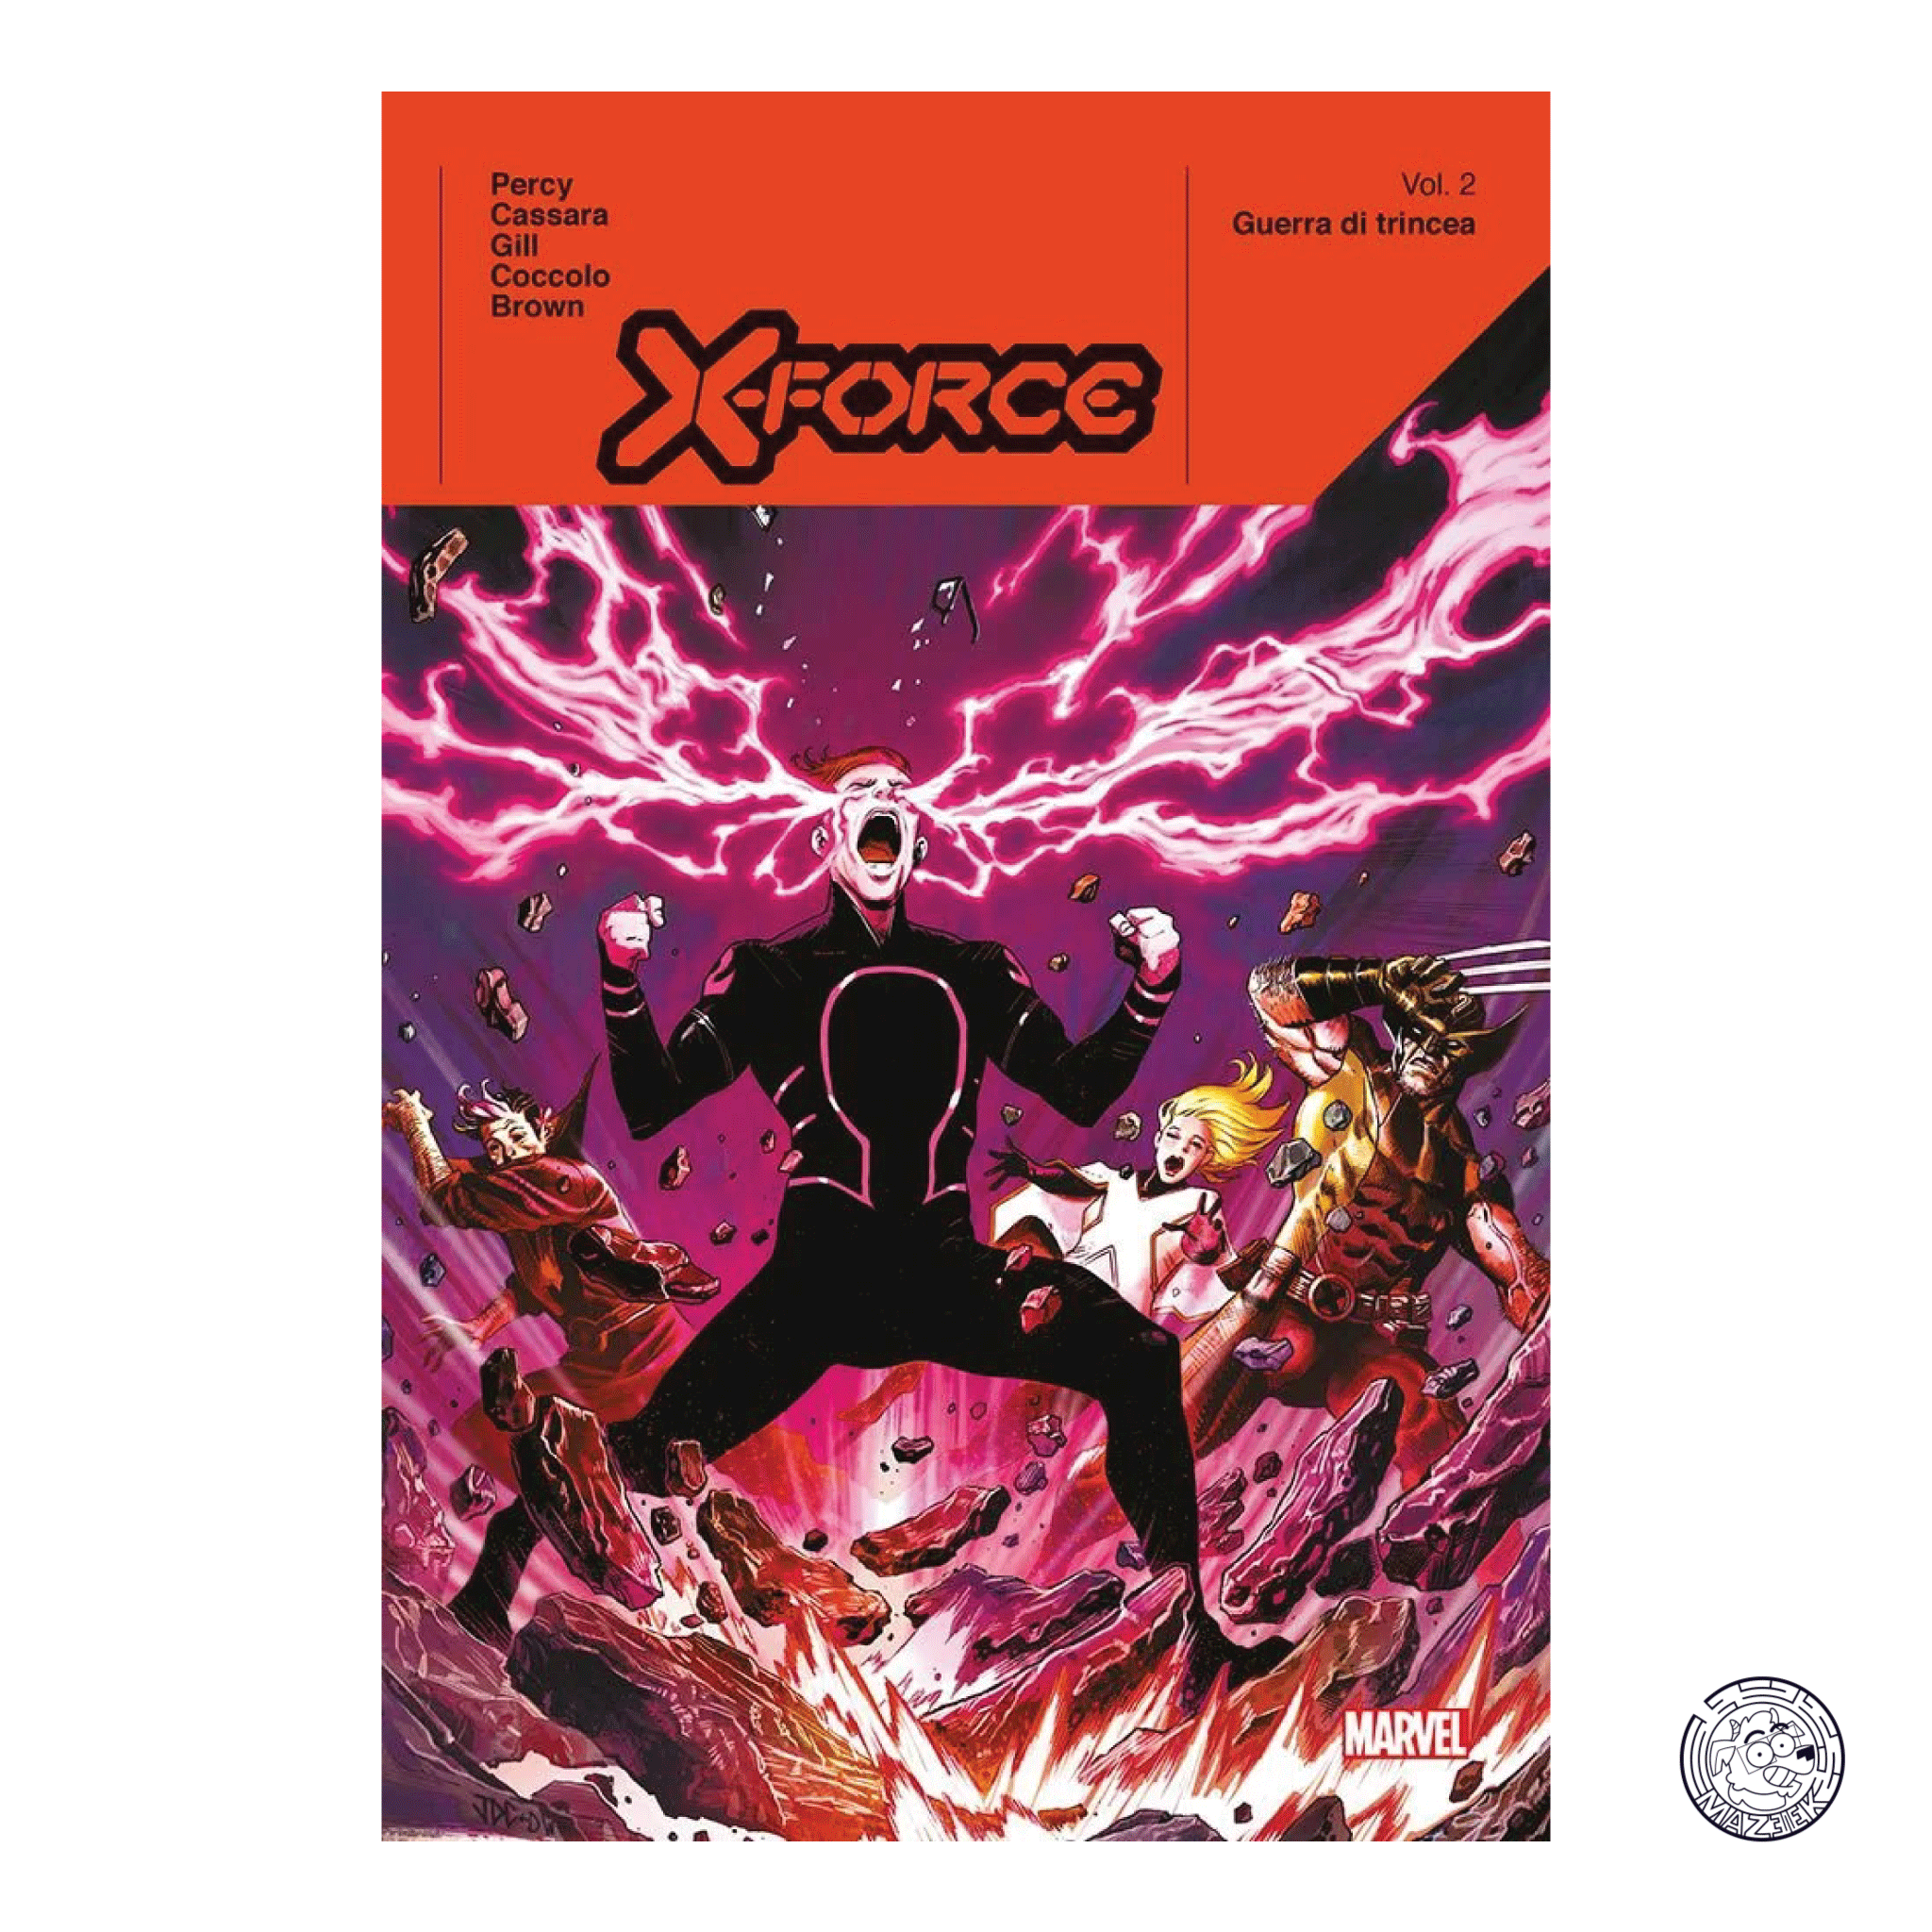 X-Force Vol. 2 – Trench Warfare